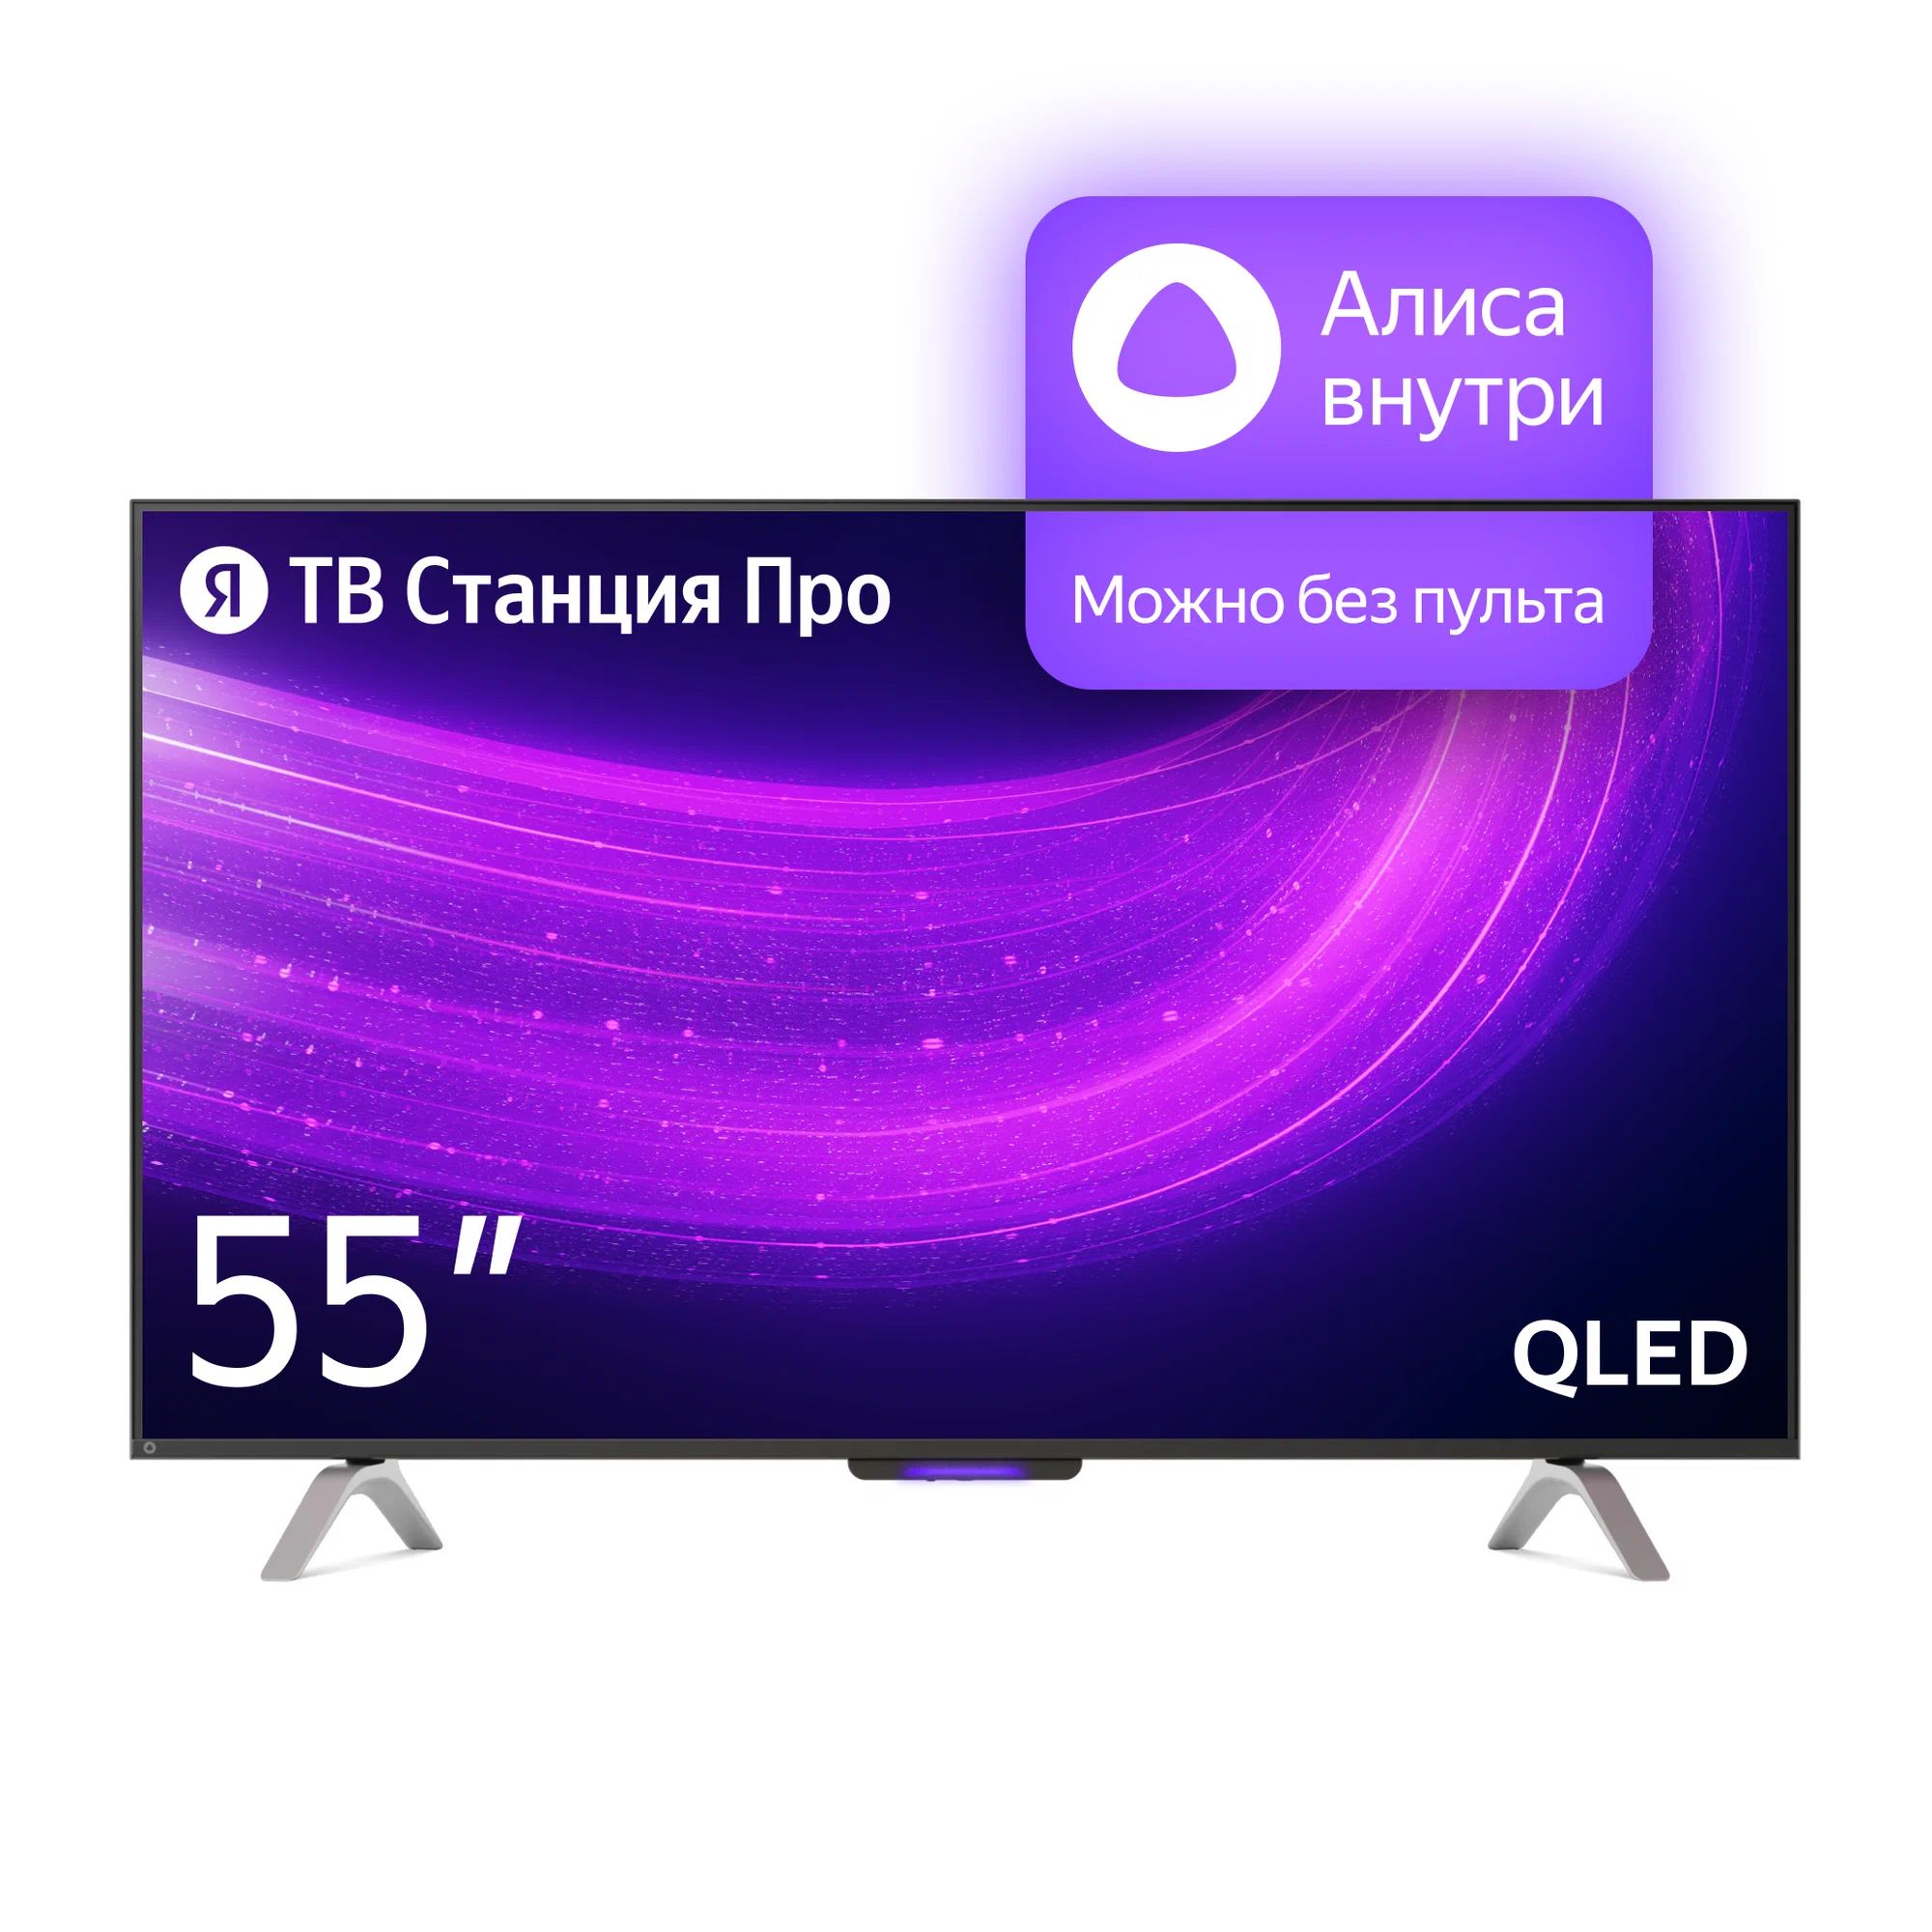 цена Телевизор Яндекс YNDX-00101 PRO Тв станция с Алисой 55